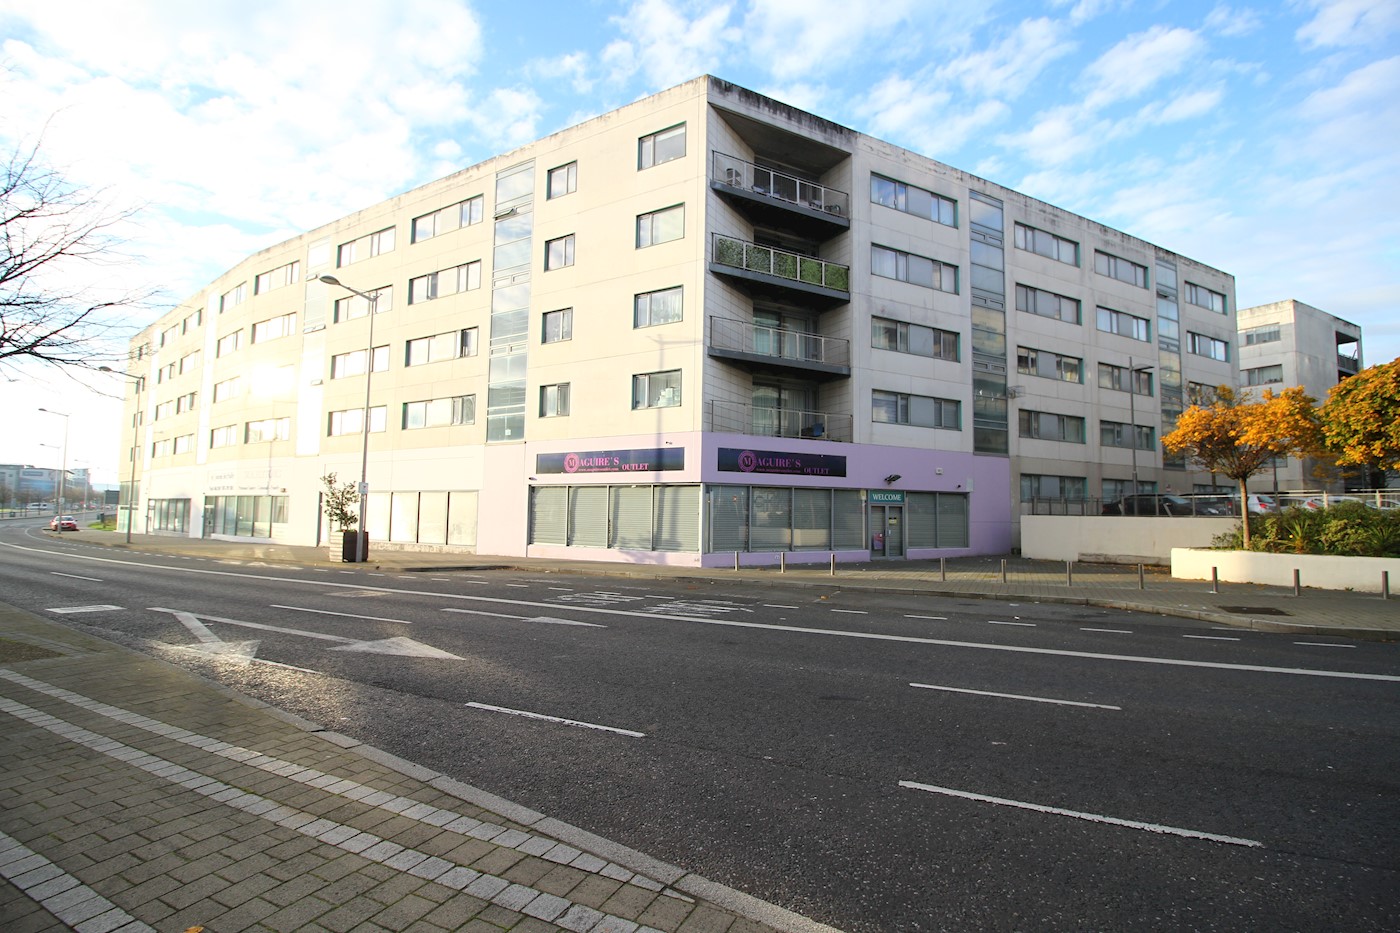 Apartment 29, Block 2, The Turnpike, Santry Cross, Dublin 11, D11 V094 1/6